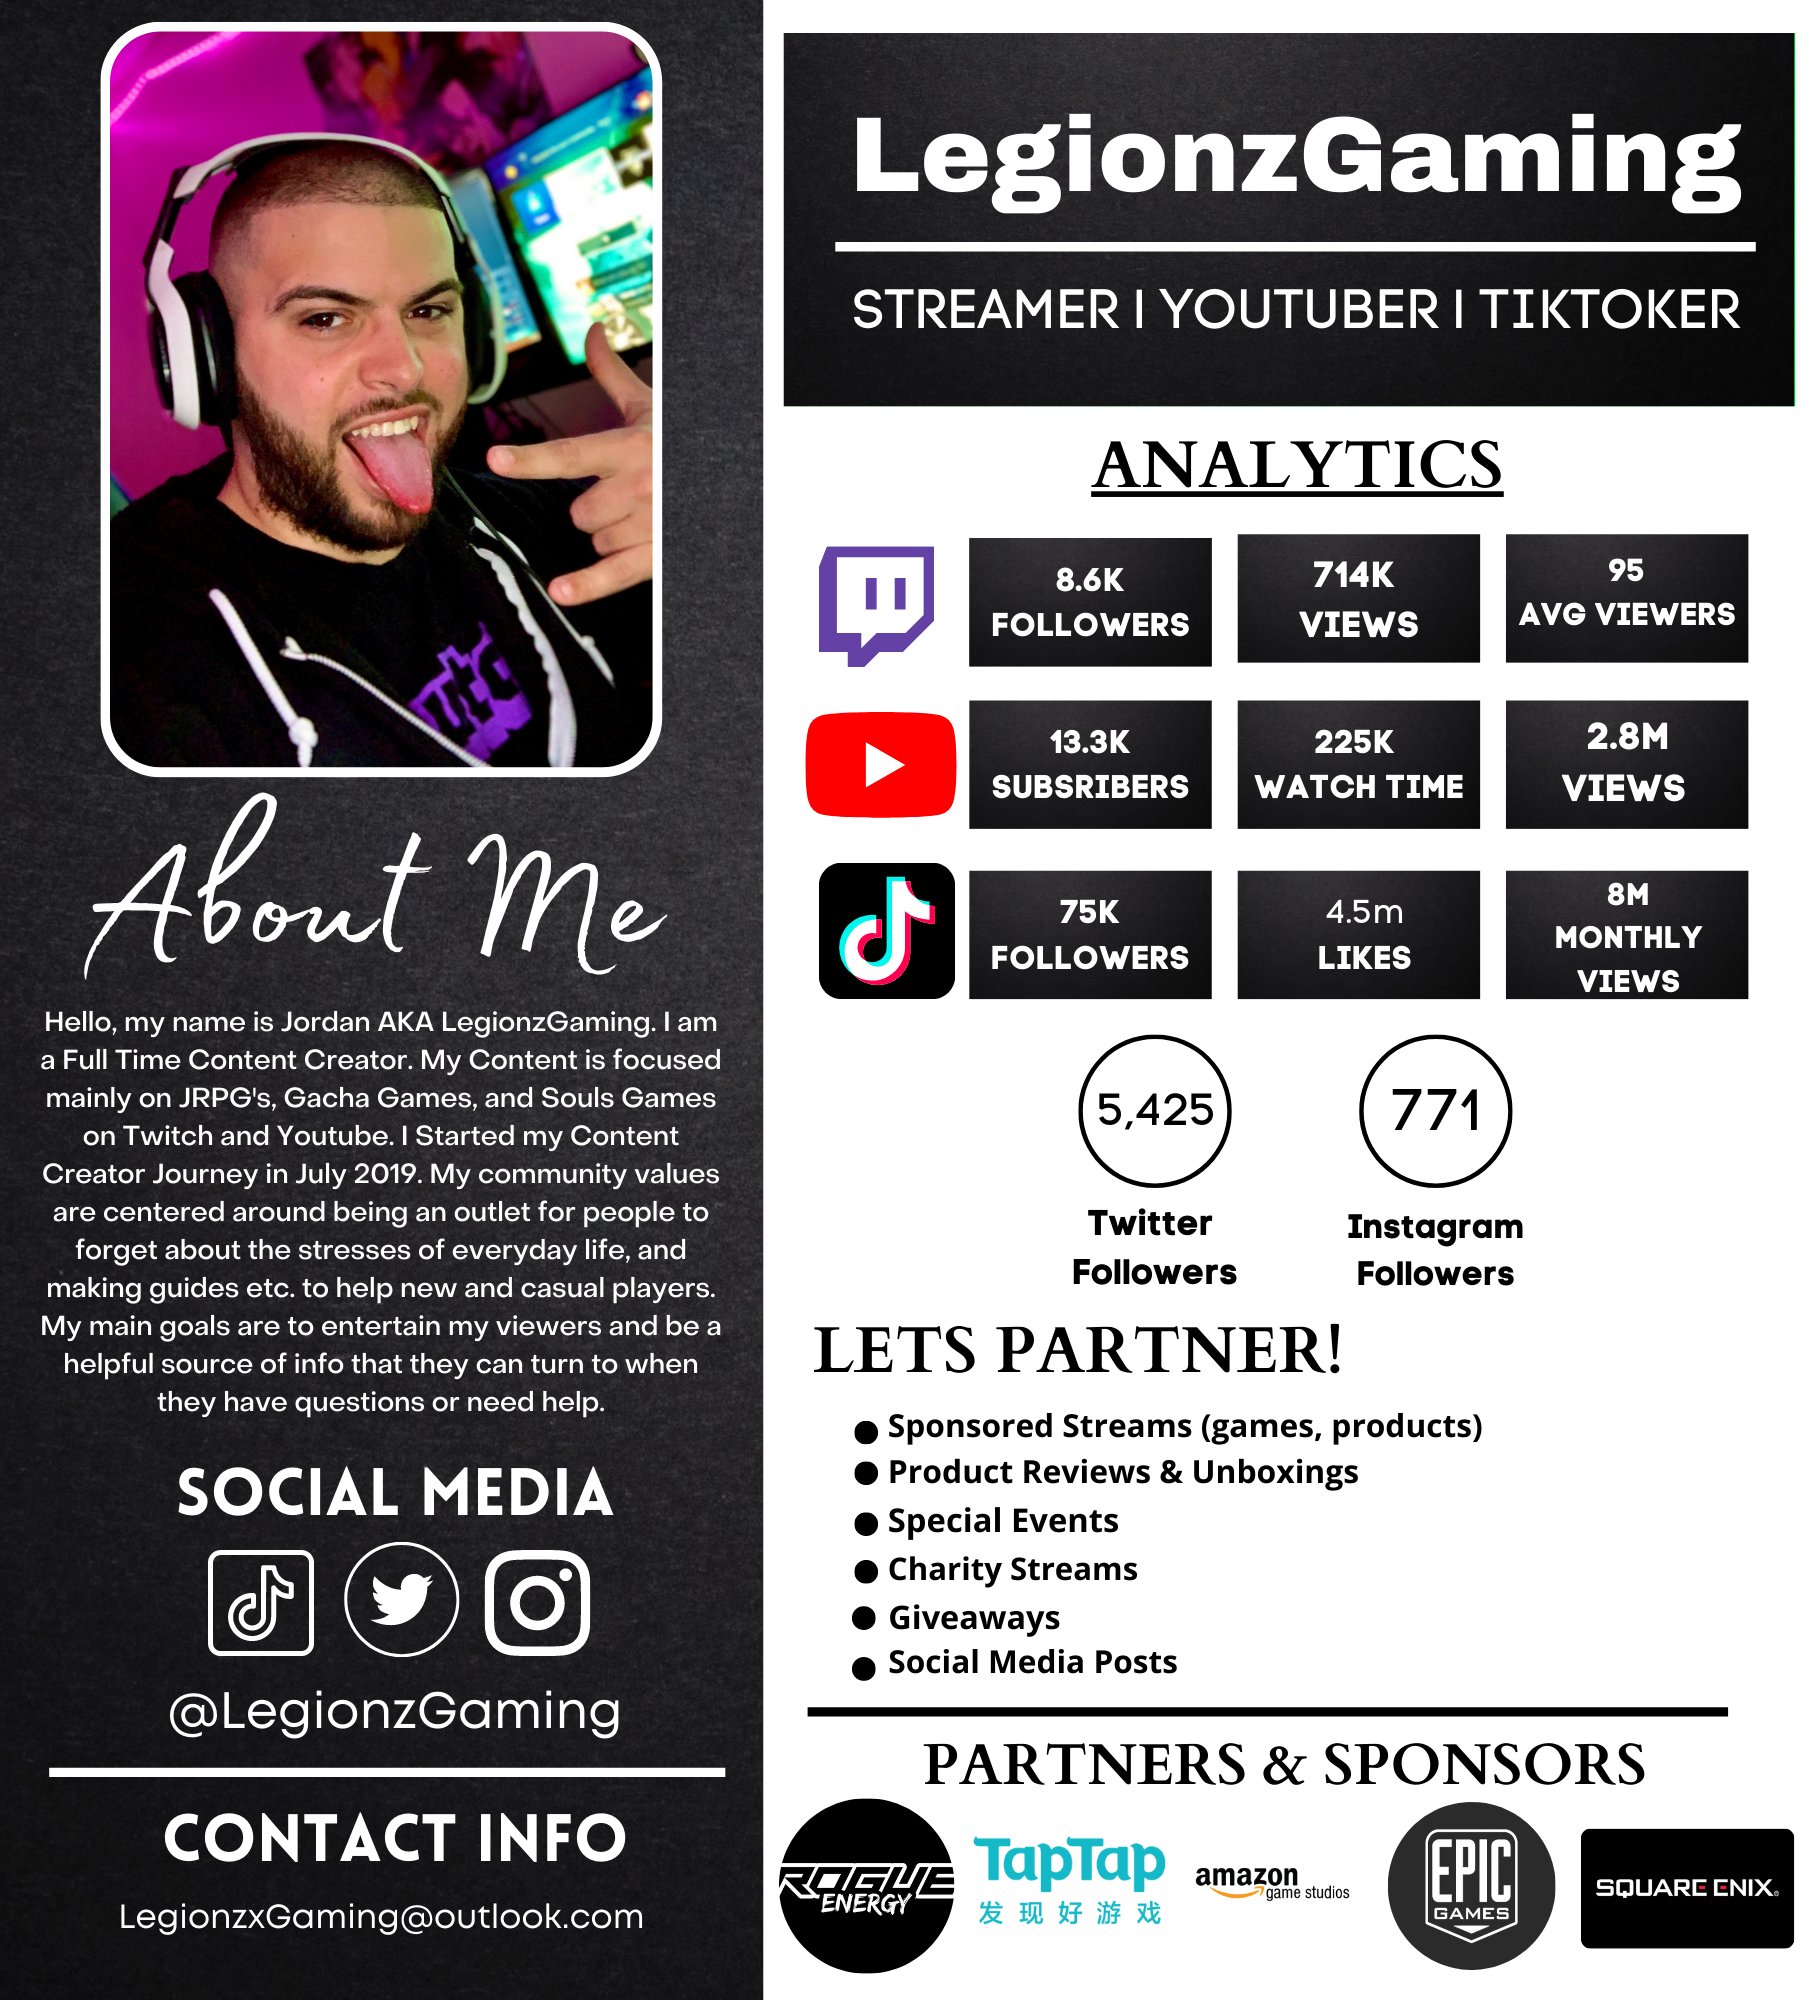 LegionzGaming - Twitch